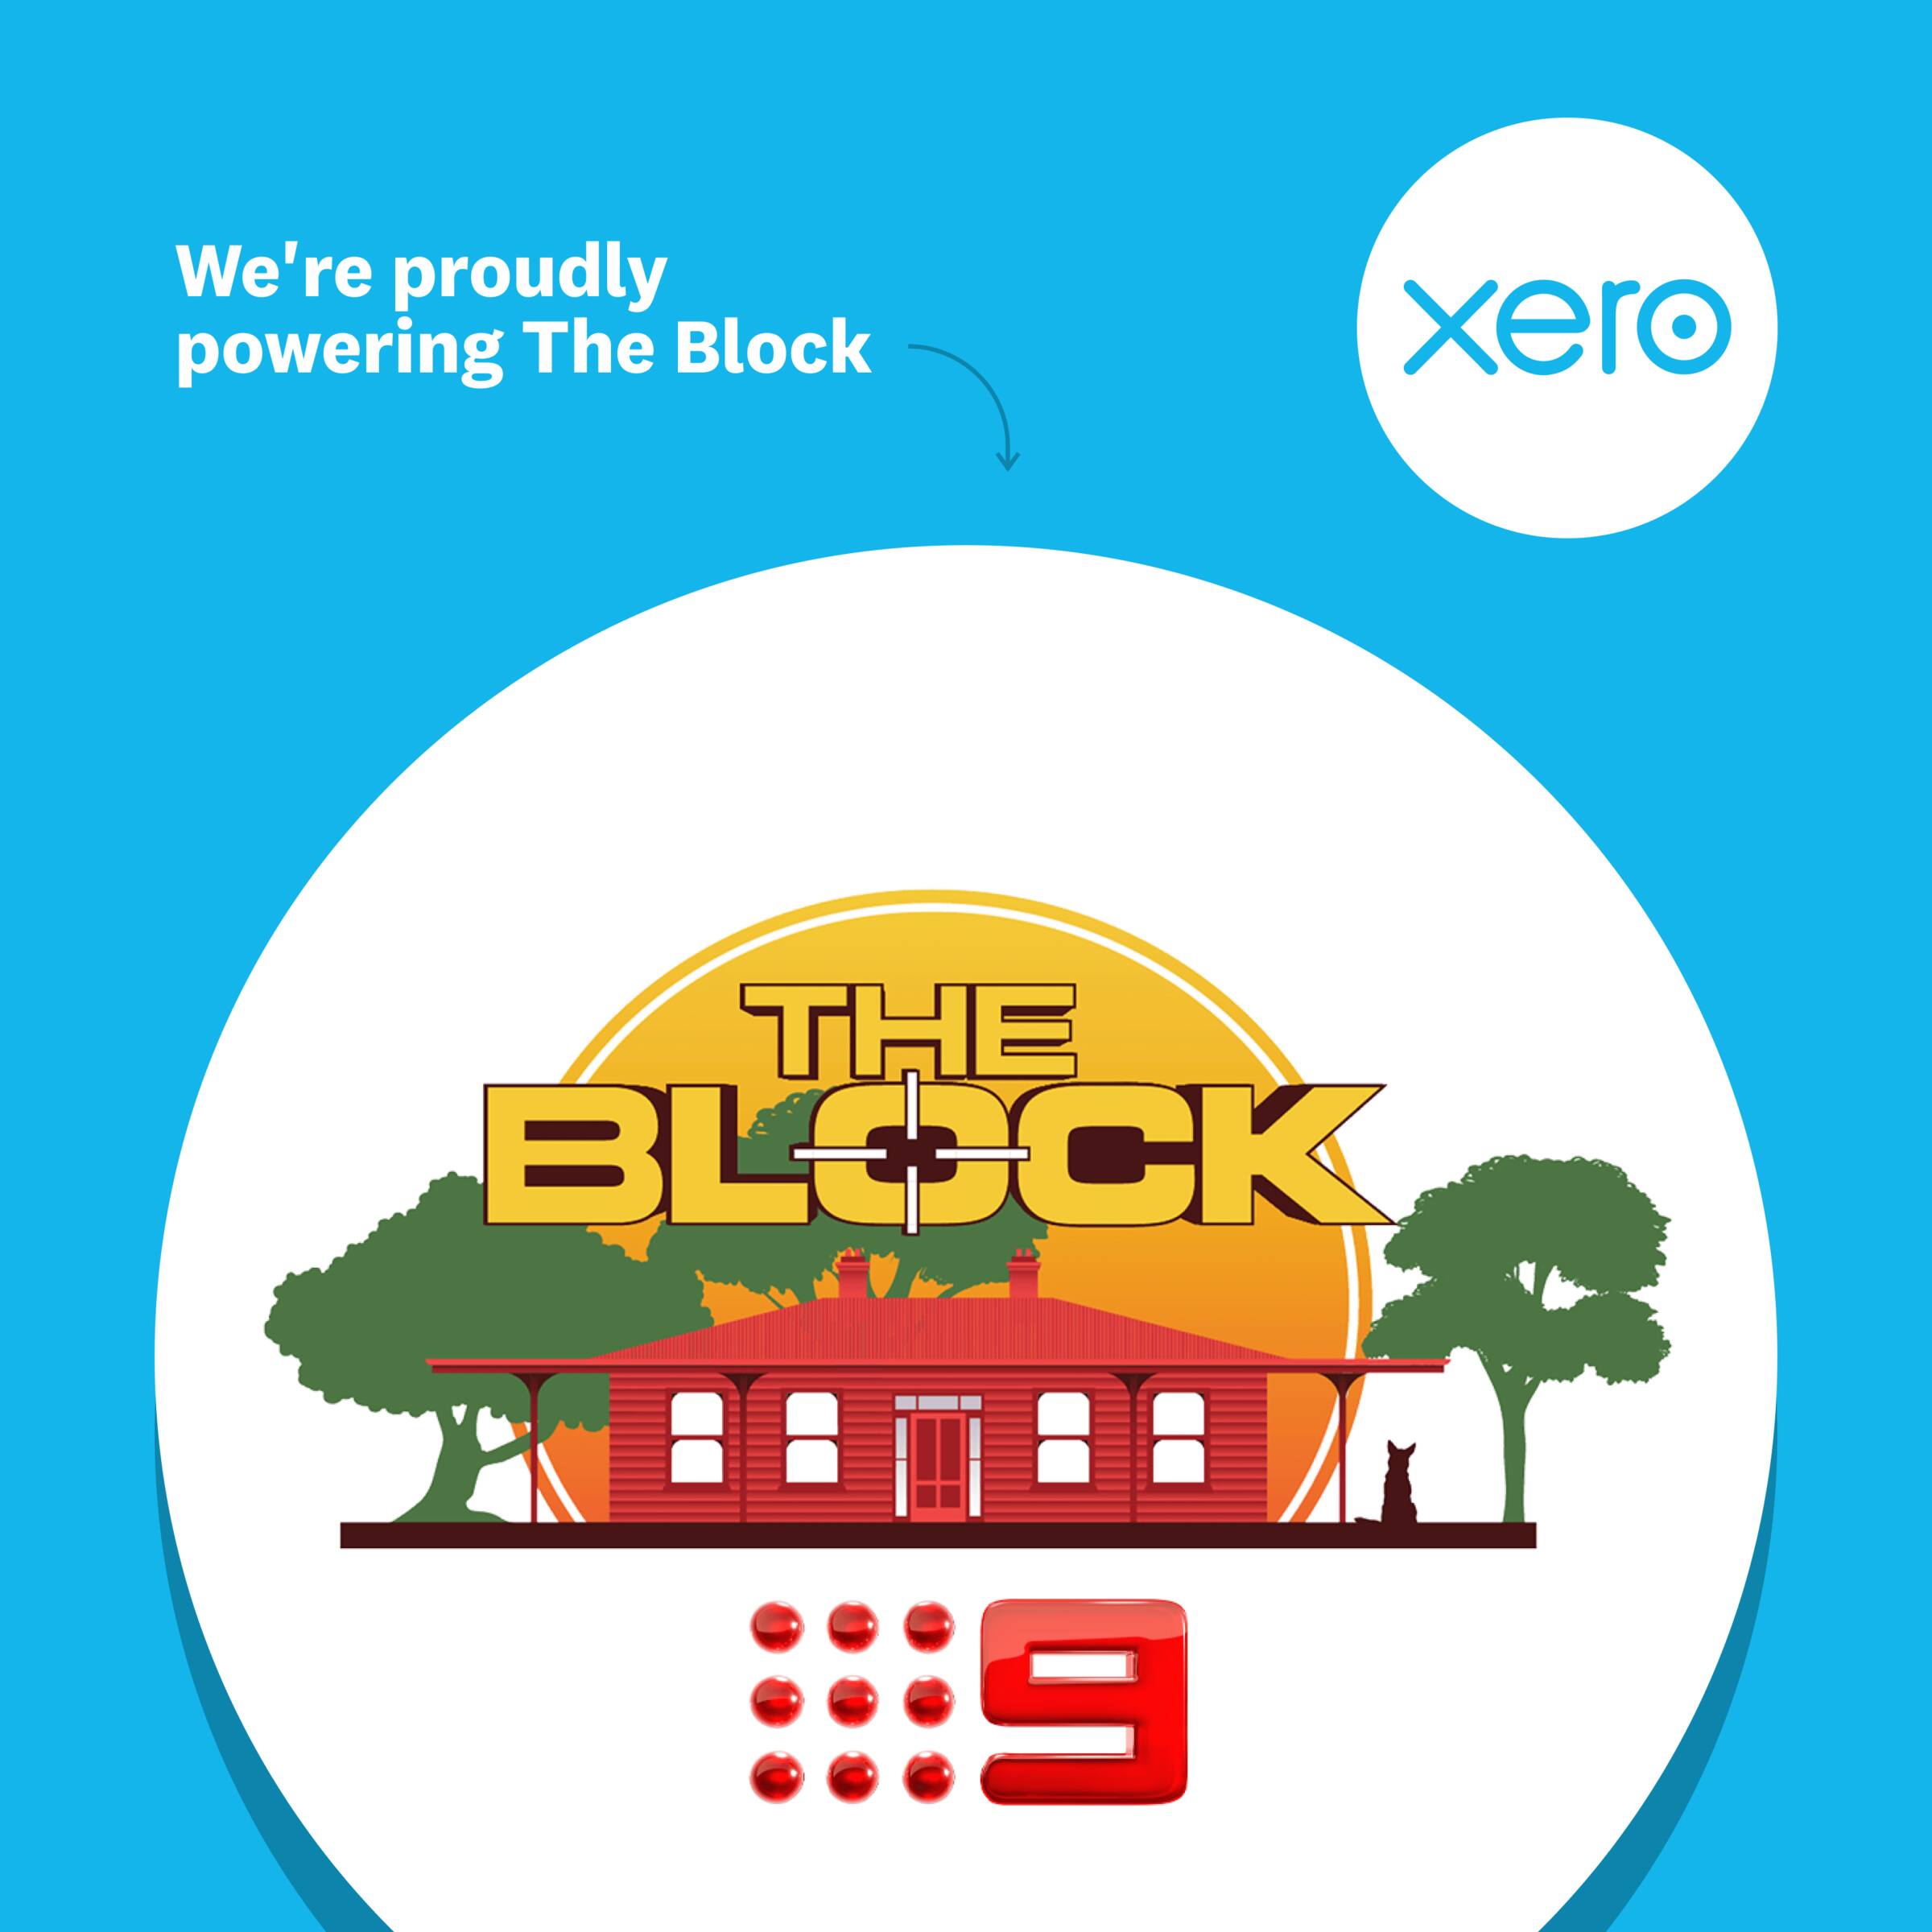 Xero proudly powering The Block